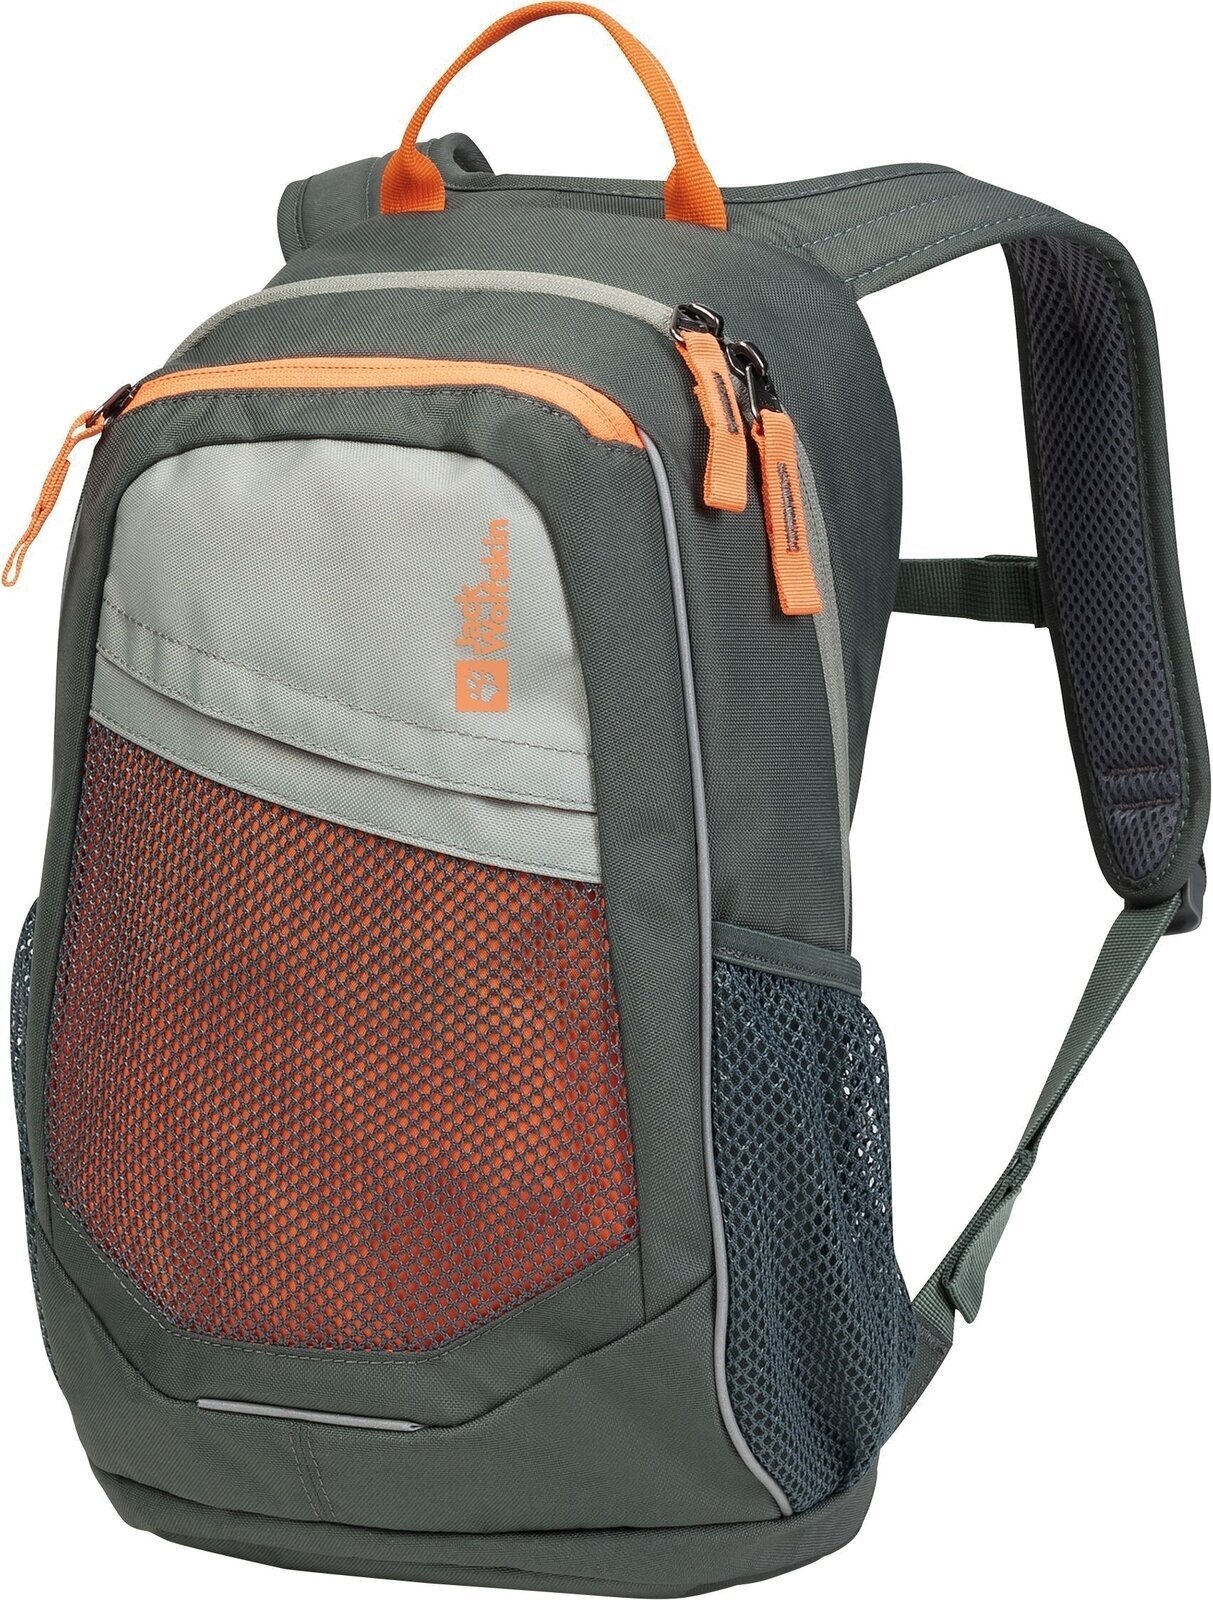 Outdoor Backpack Jack Wolfskin Track Jack Slate Green Outdoor Backpack